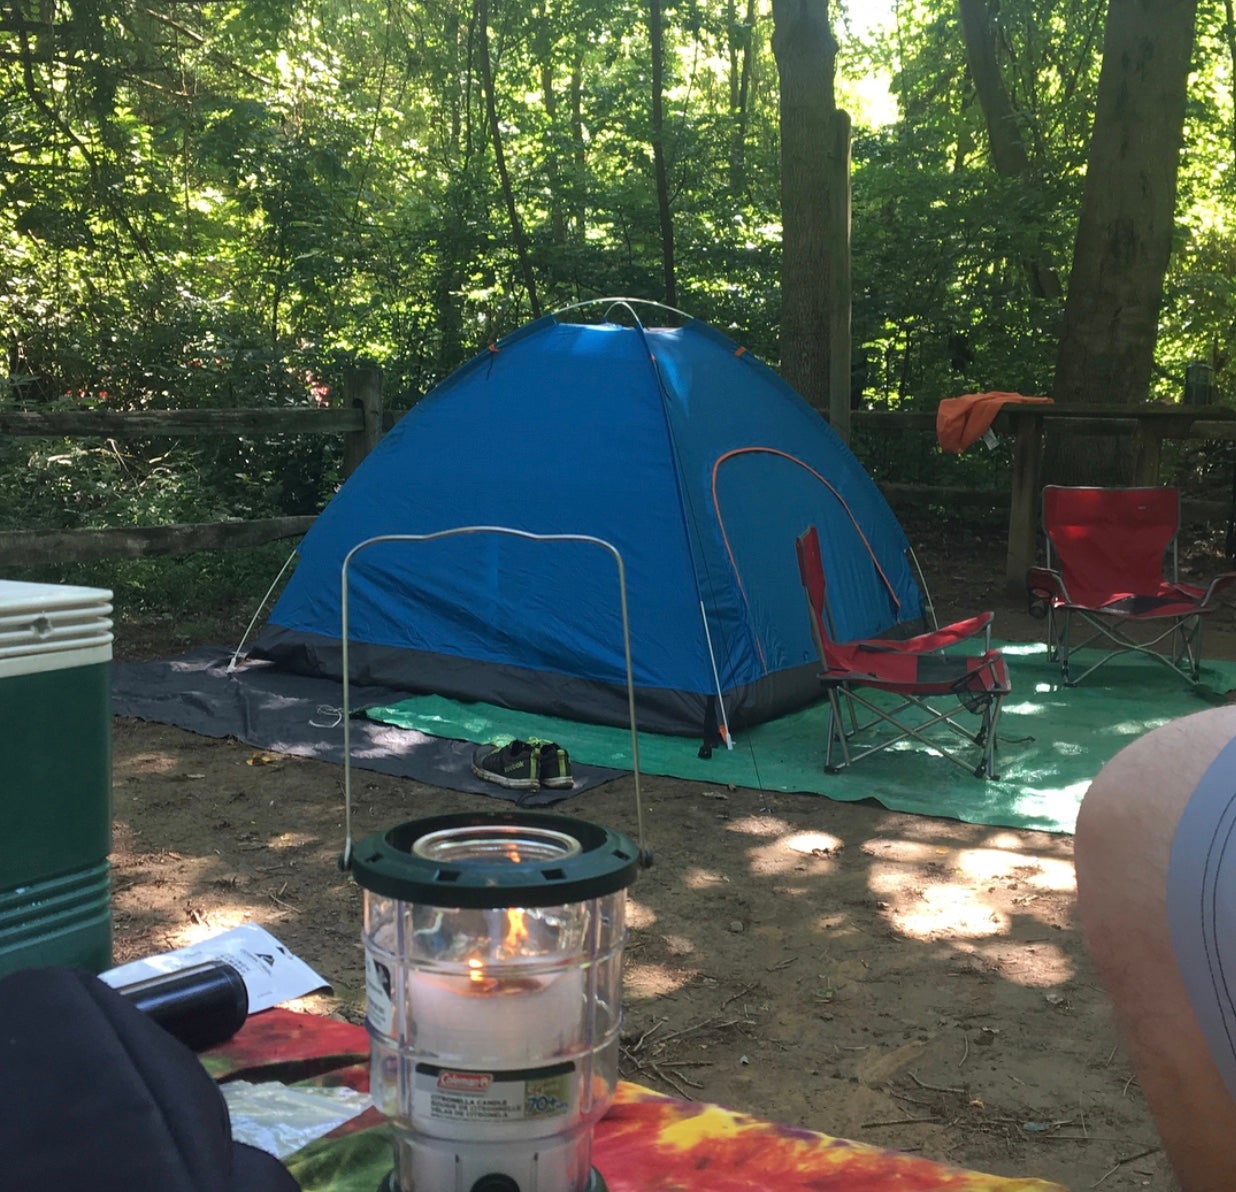 campsite set up. could’ve fit second tent